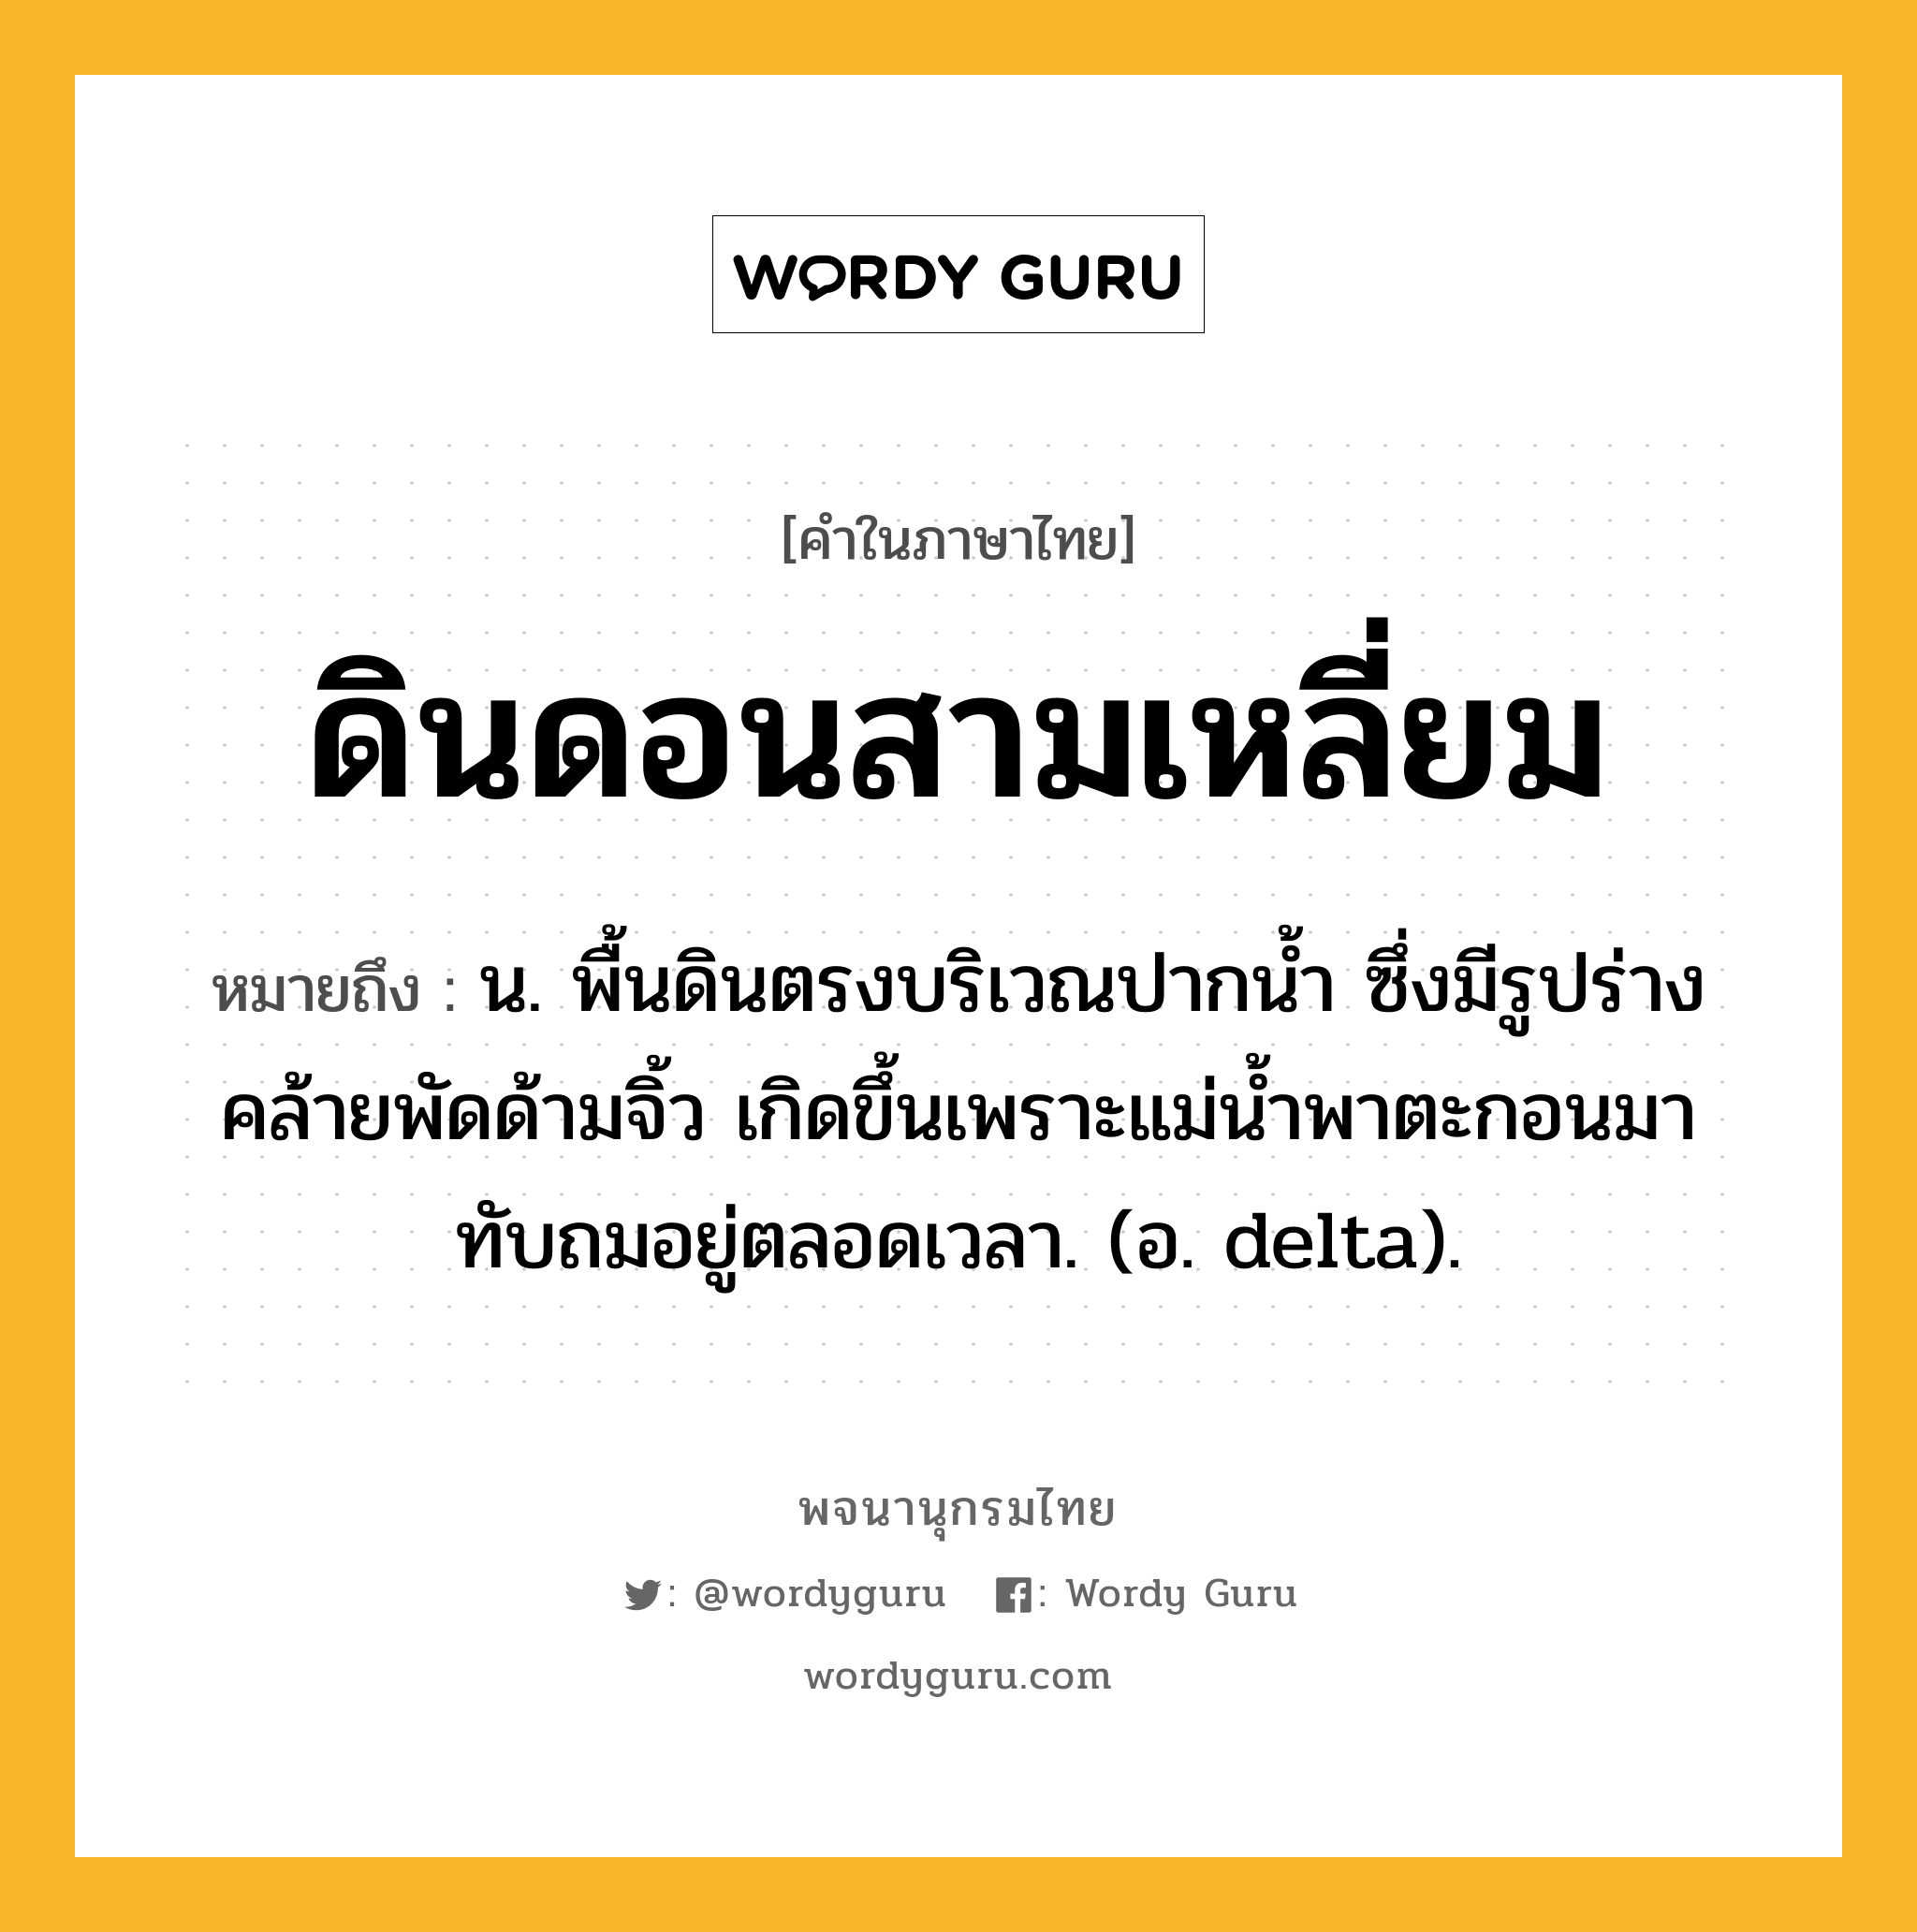 ดินดอนสามเหลี่ยม หมายถึงอะไร?, คำในภาษาไทย ดินดอนสามเหลี่ยม หมายถึง น. พื้นดินตรงบริเวณปากนํ้า ซึ่งมีรูปร่างคล้ายพัดด้ามจิ้ว เกิดขึ้นเพราะแม่นํ้าพาตะกอนมาทับถมอยู่ตลอดเวลา. (อ. delta).